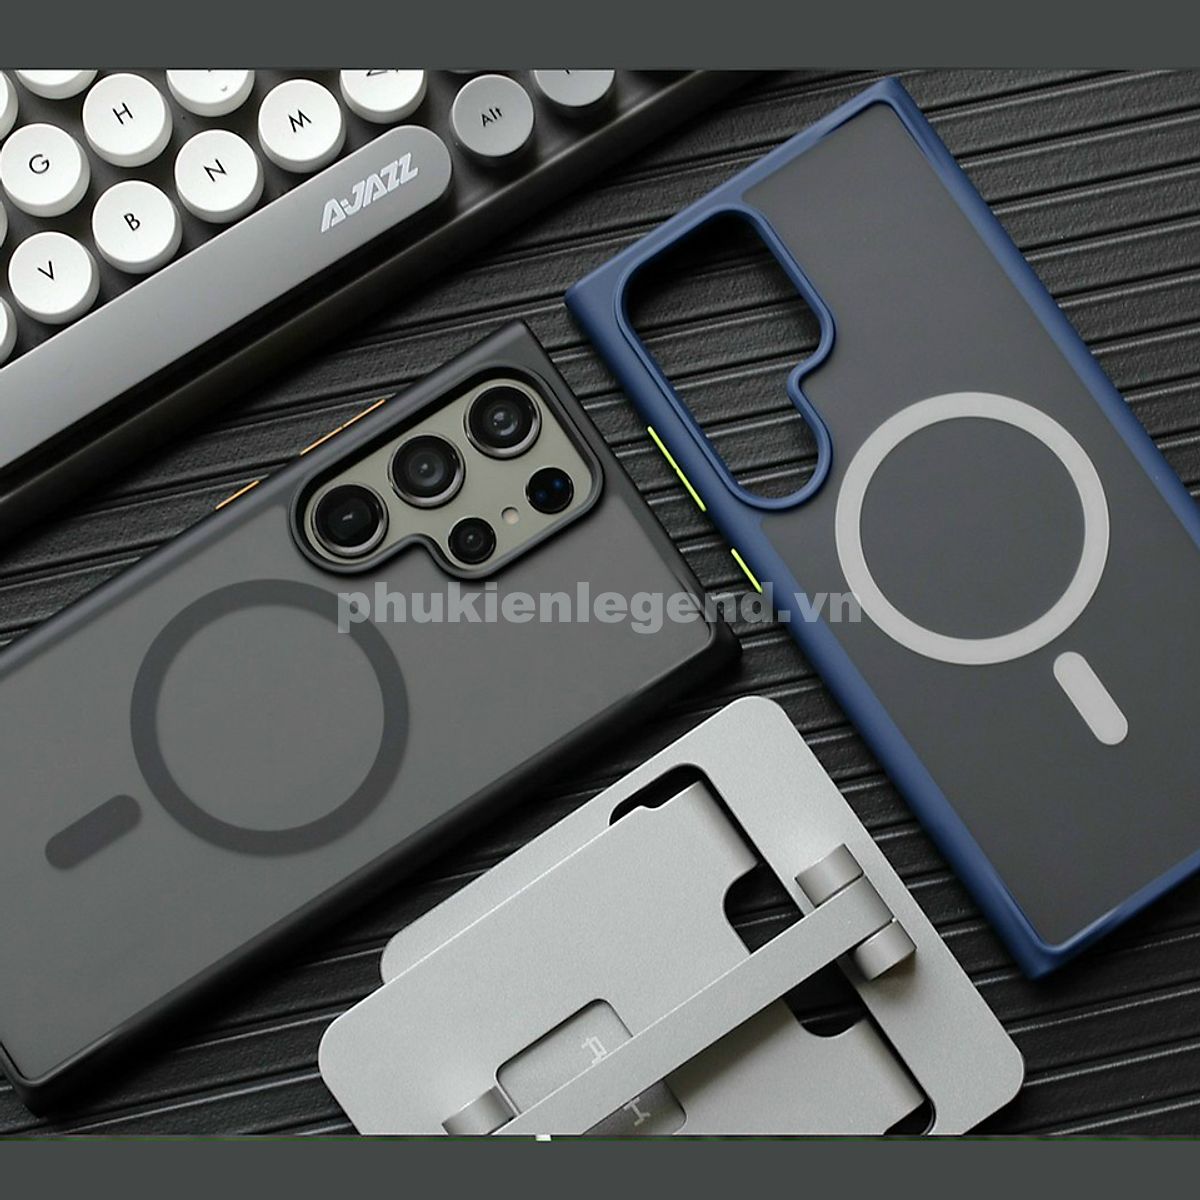 Ốp lưng nhám sạc từ tính cho Samsung Galaxy S24 Ultra hiệu Likgus PC Ultra-thin Frosted Magnetic Case - mặt lưng nhám mờ chống bám bẩn, gờ bảo vệ Camera 0.5mm - Hàng chính hãng